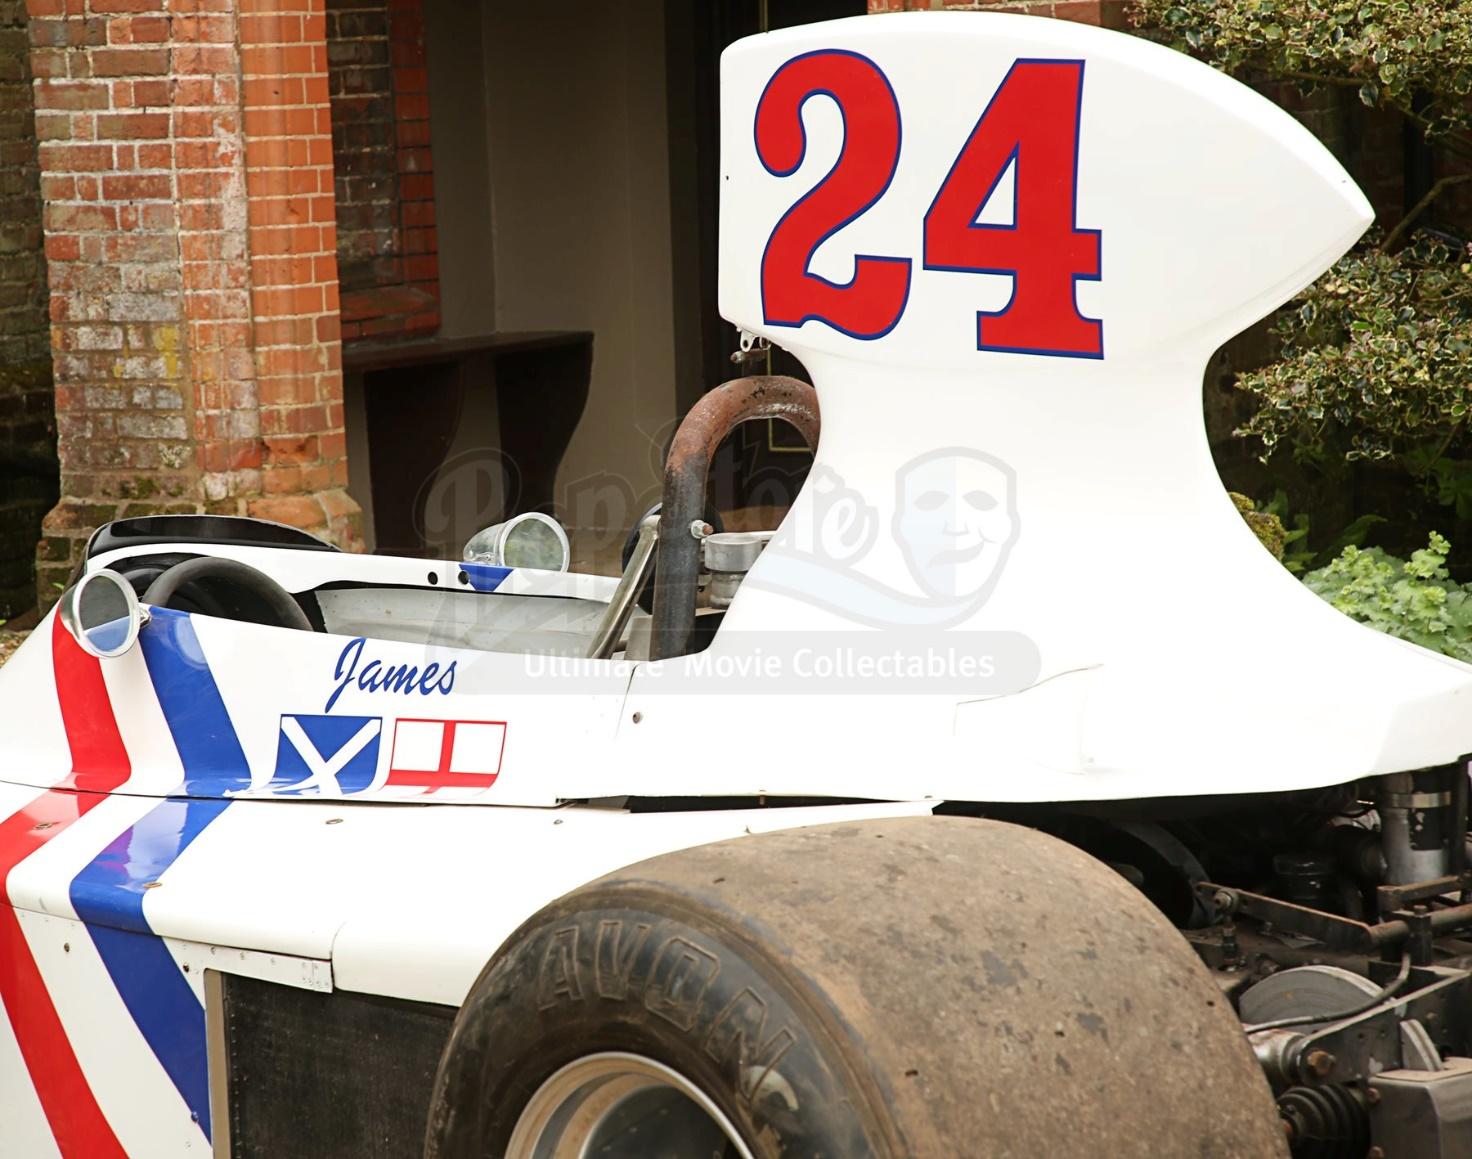 The Hesketh F1 car.